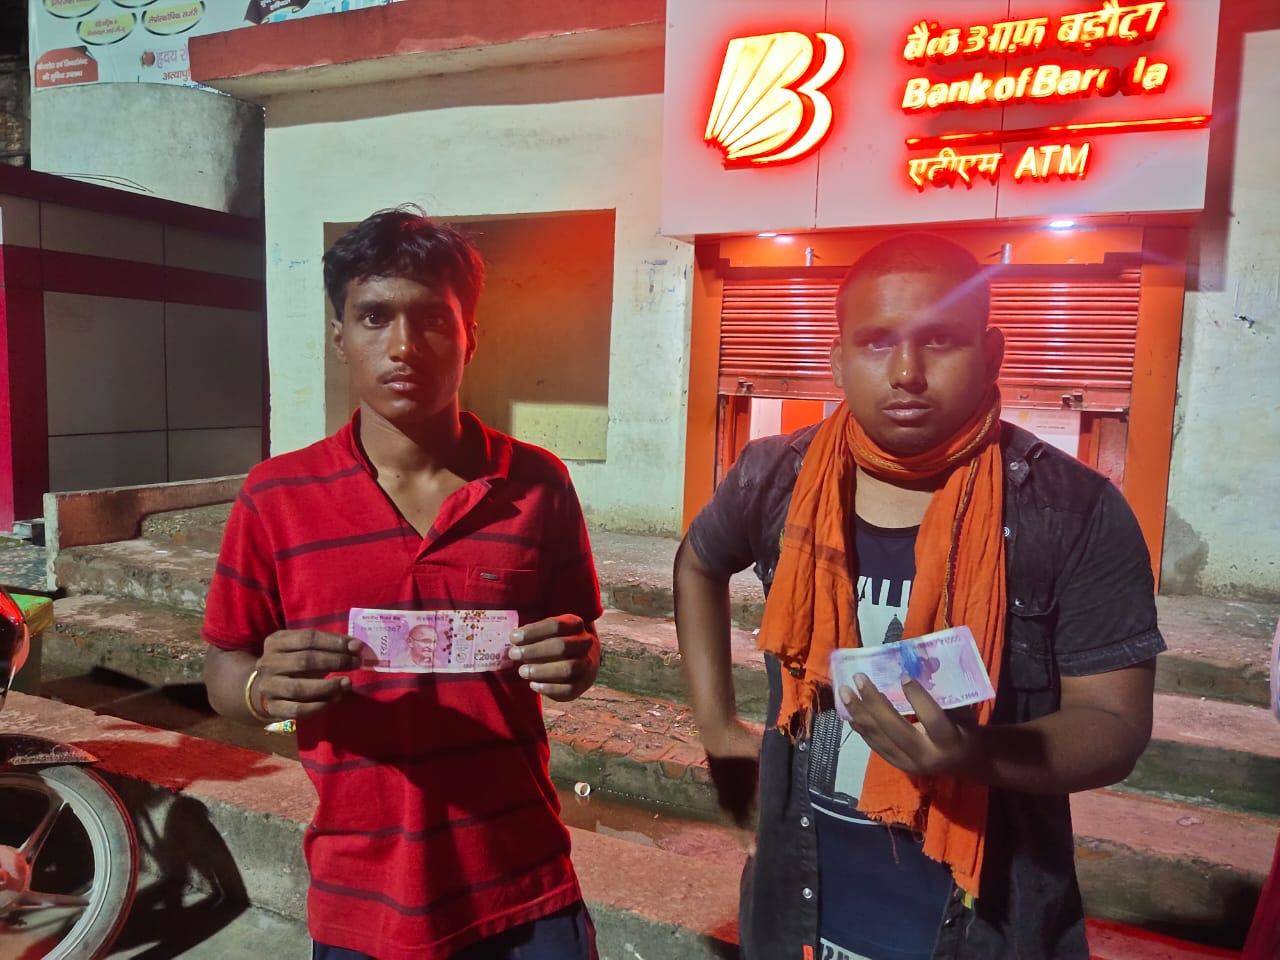 DDU स्टेशन के ATM ने निकल रहे डिफेक्टेड नोट, बैंक ऑफ बड़ौदा कर रहा लोगों को परेशान